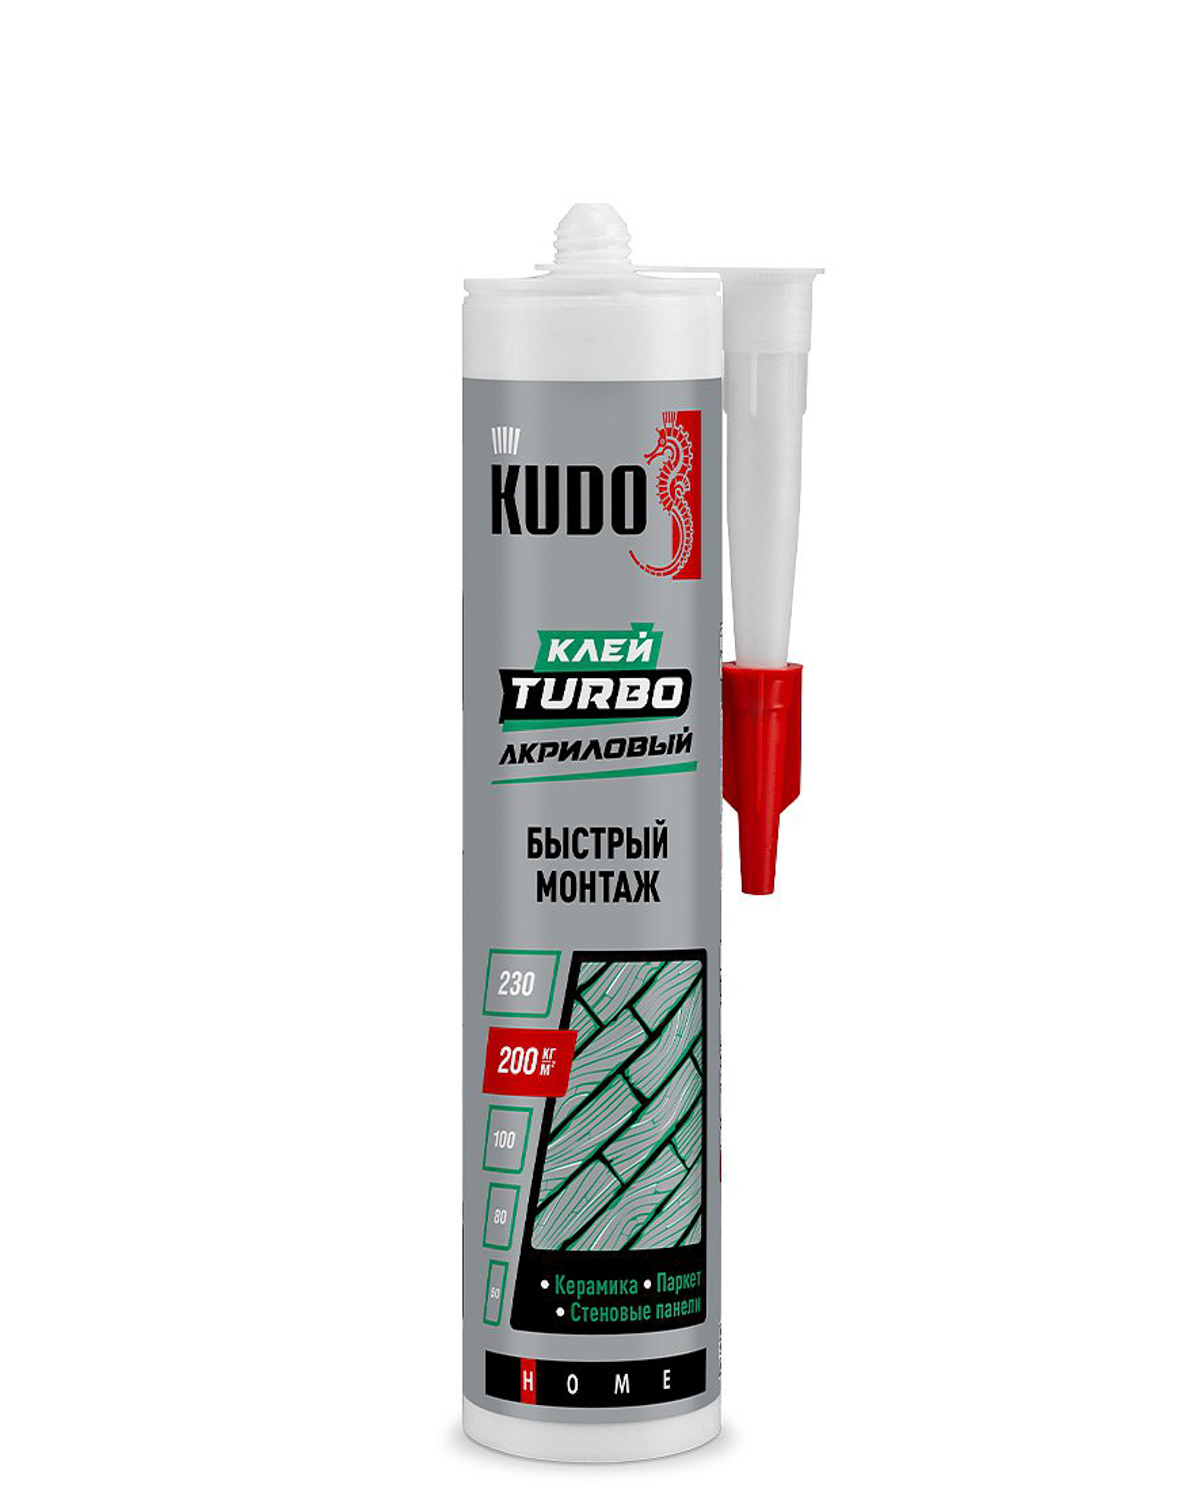 Клей Kudo Turbo для быстрого монтажа универсальный белый KBK-331 280 мл